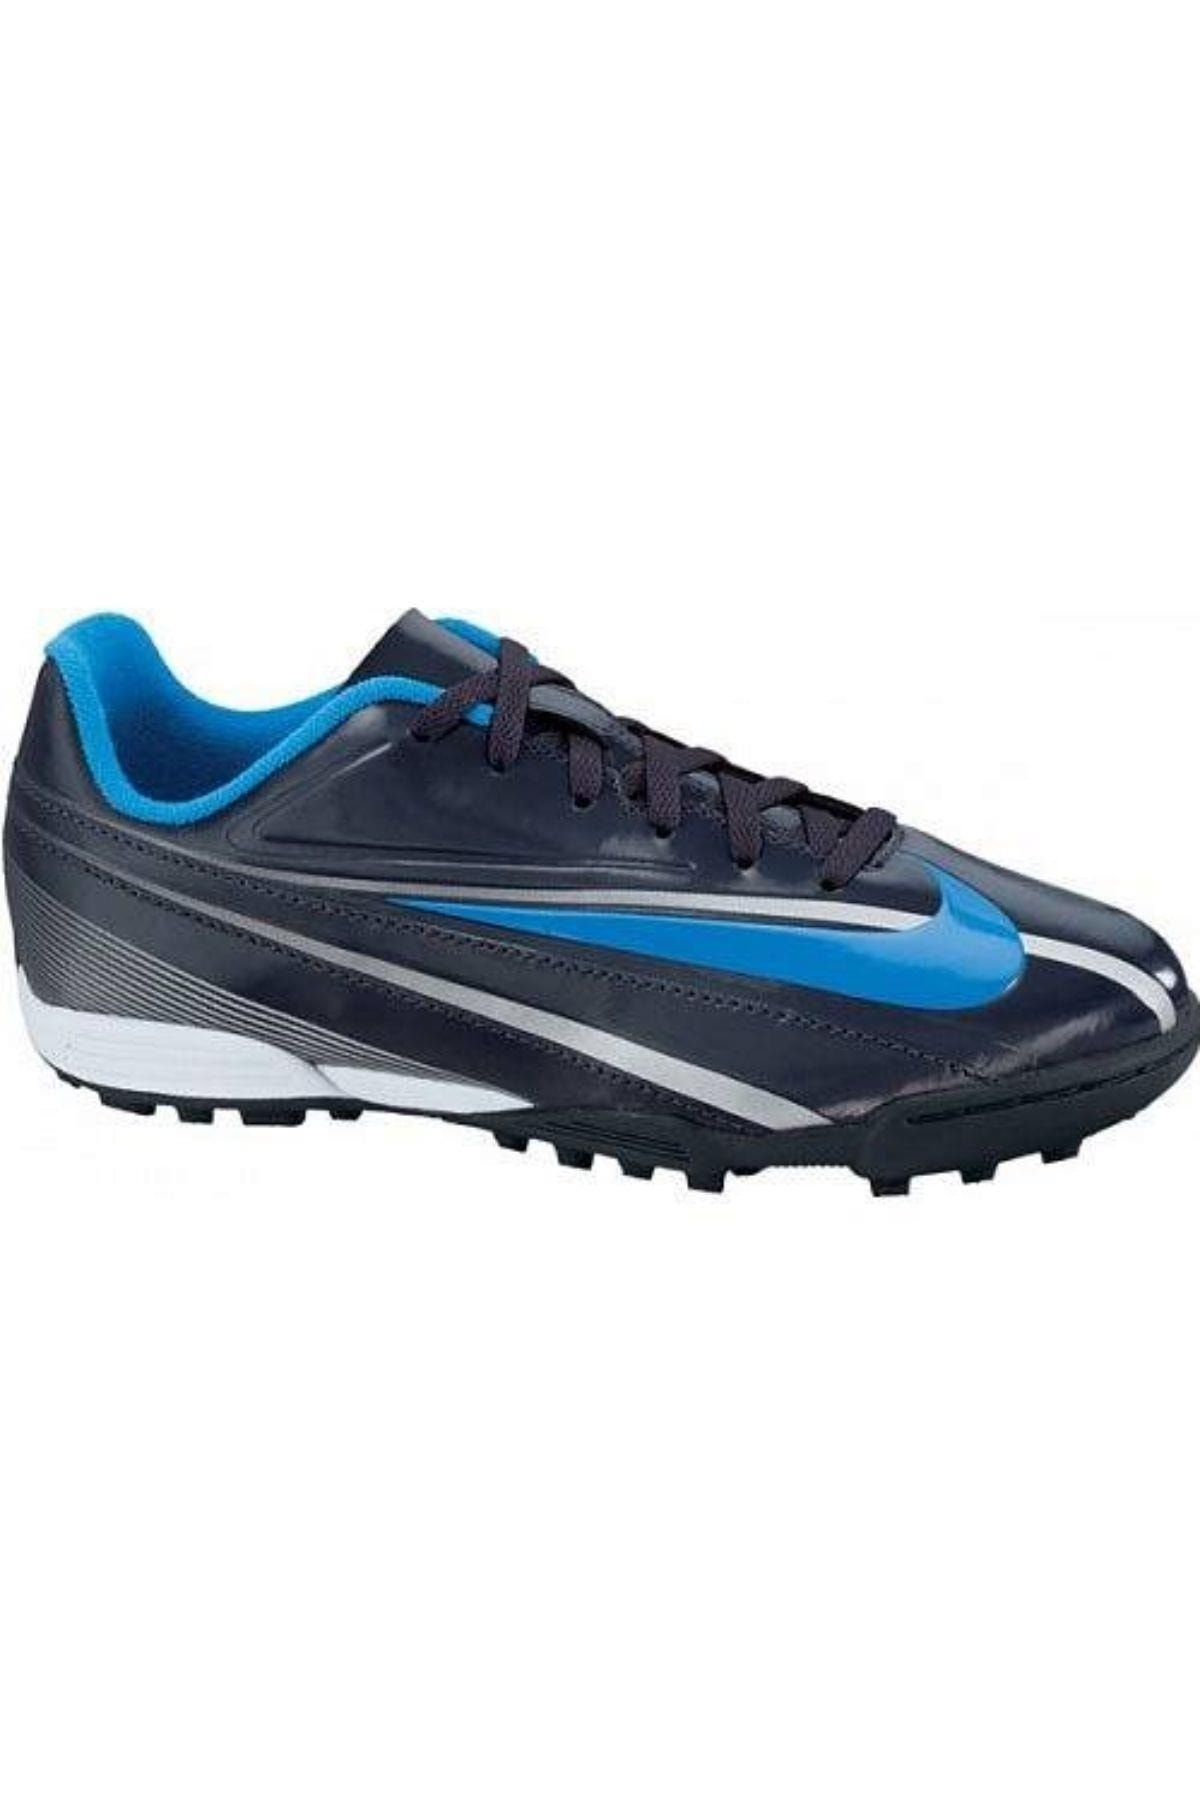 Nike Erkek Çocuk Lacivert Antrasit Mavi Futbol Ayakkabısı Halı Saha - Jr Swıft Tf - 442464-440